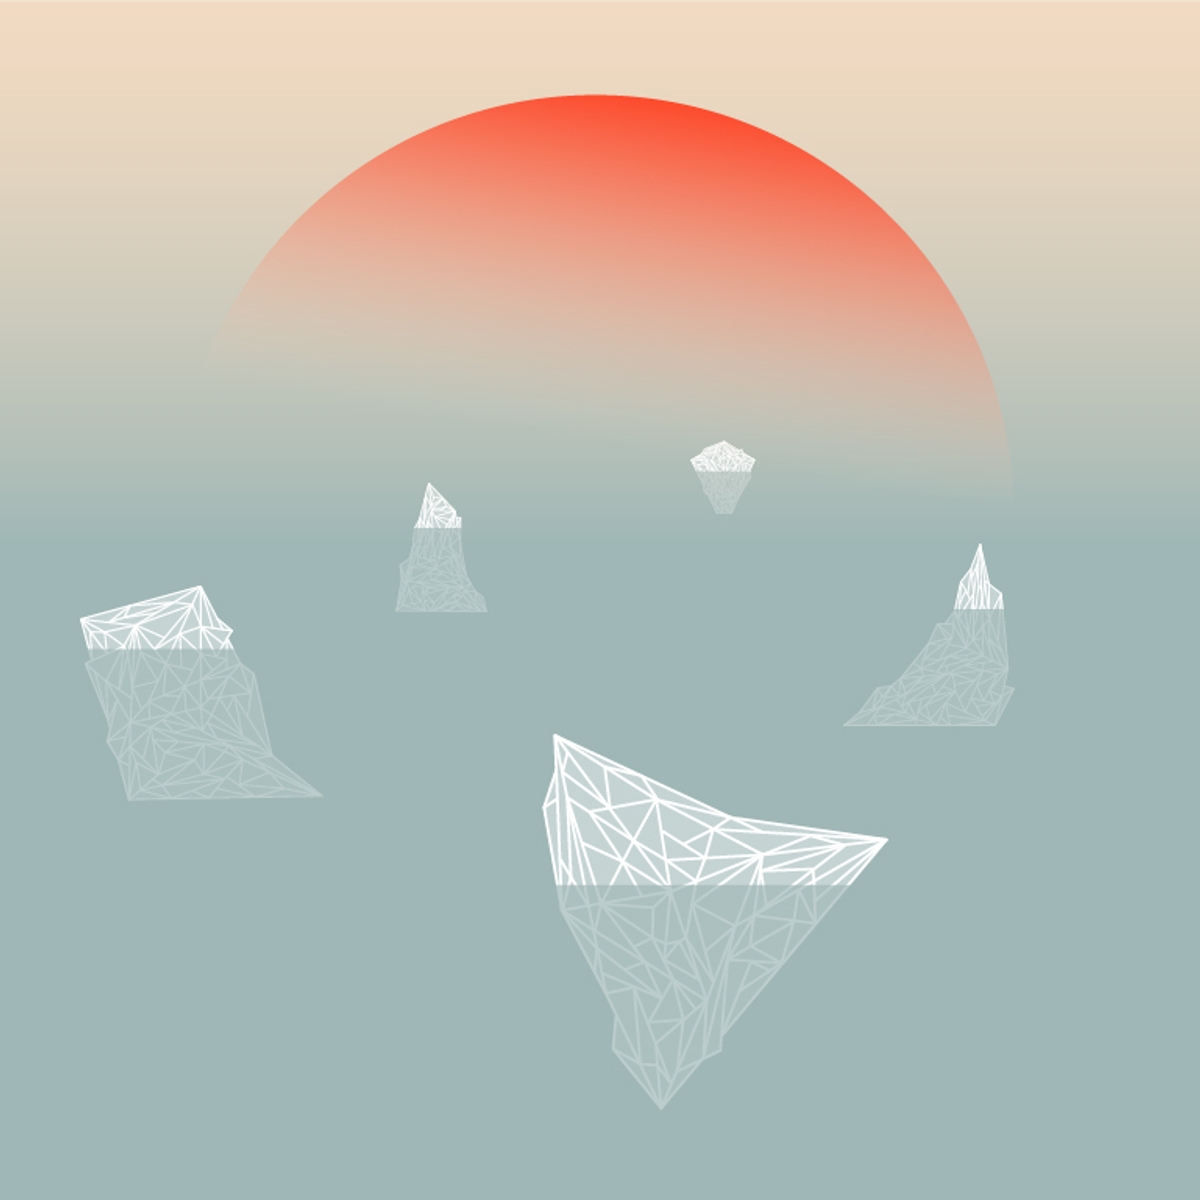 Illustration du chapitre "iceberg" montrant une grille de polygones à base résolutions de différentes postures humaines